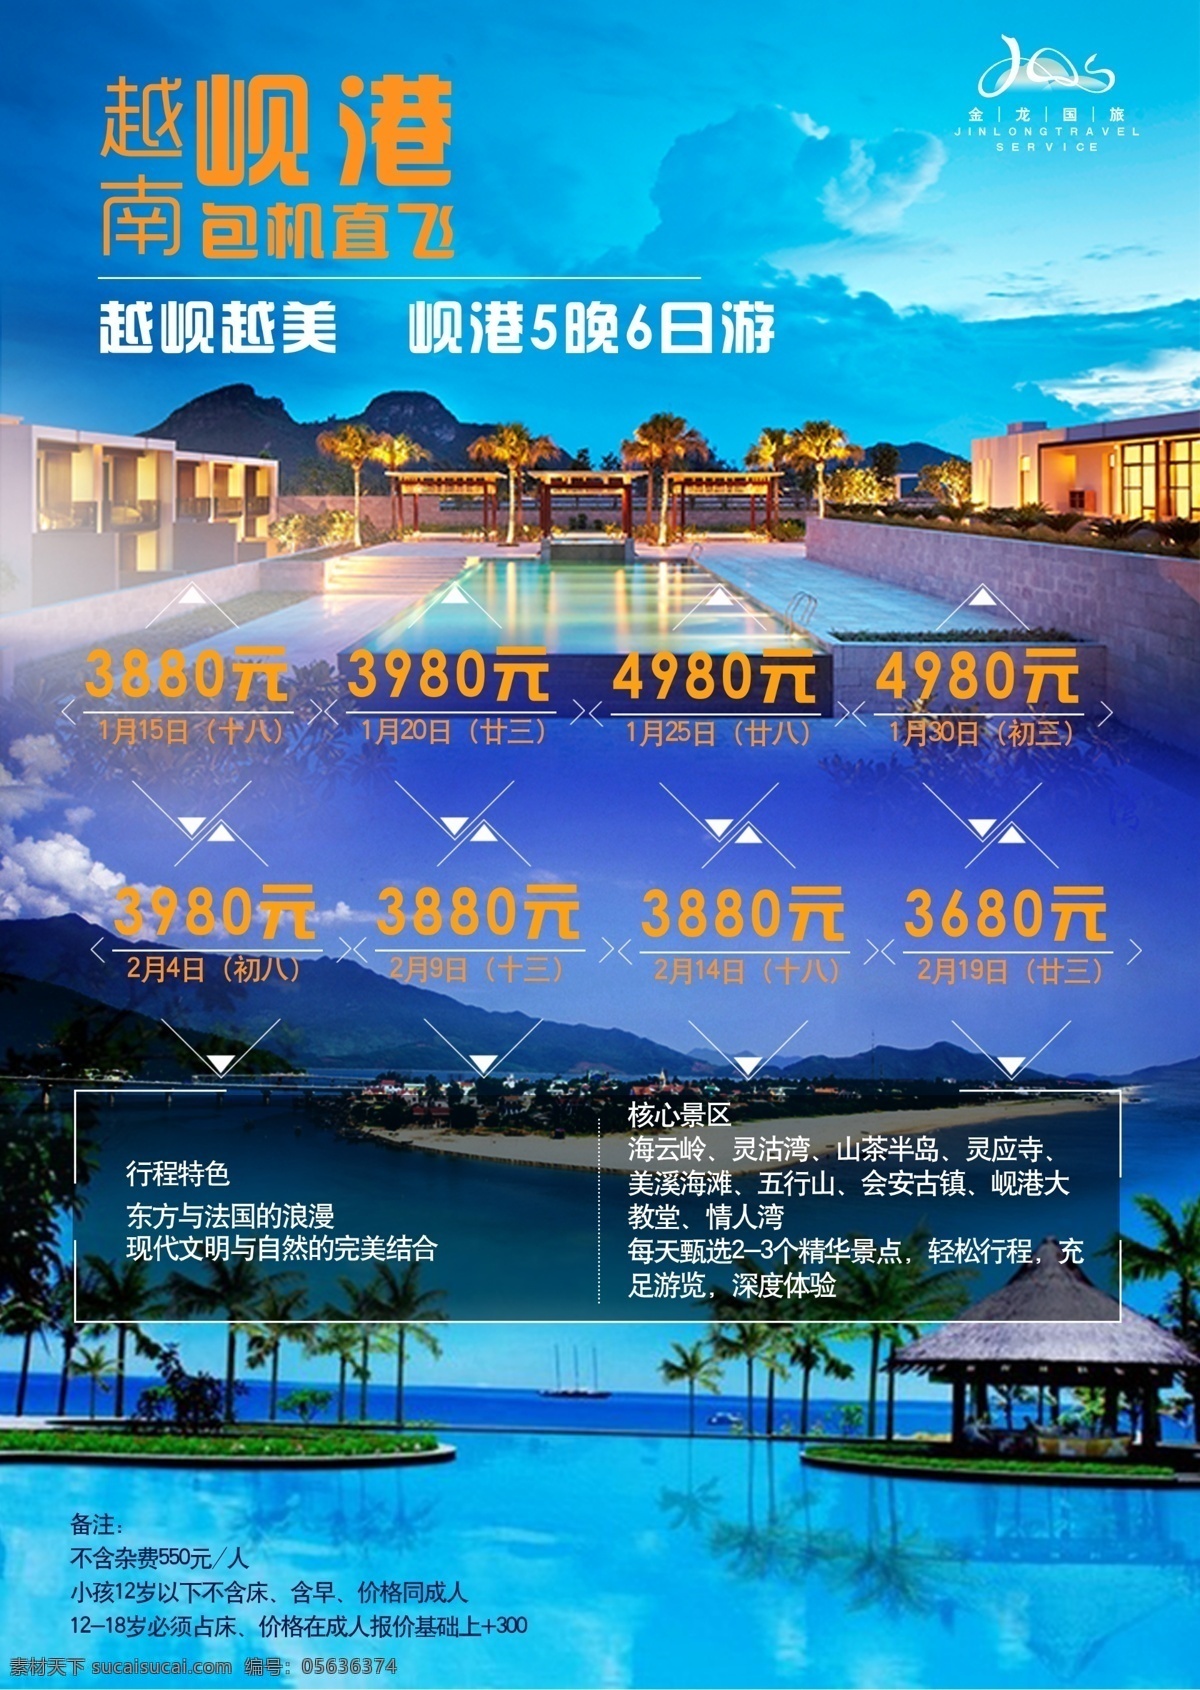 越南 岘港 旅游 宣传 高清 团期 价格 当地特色